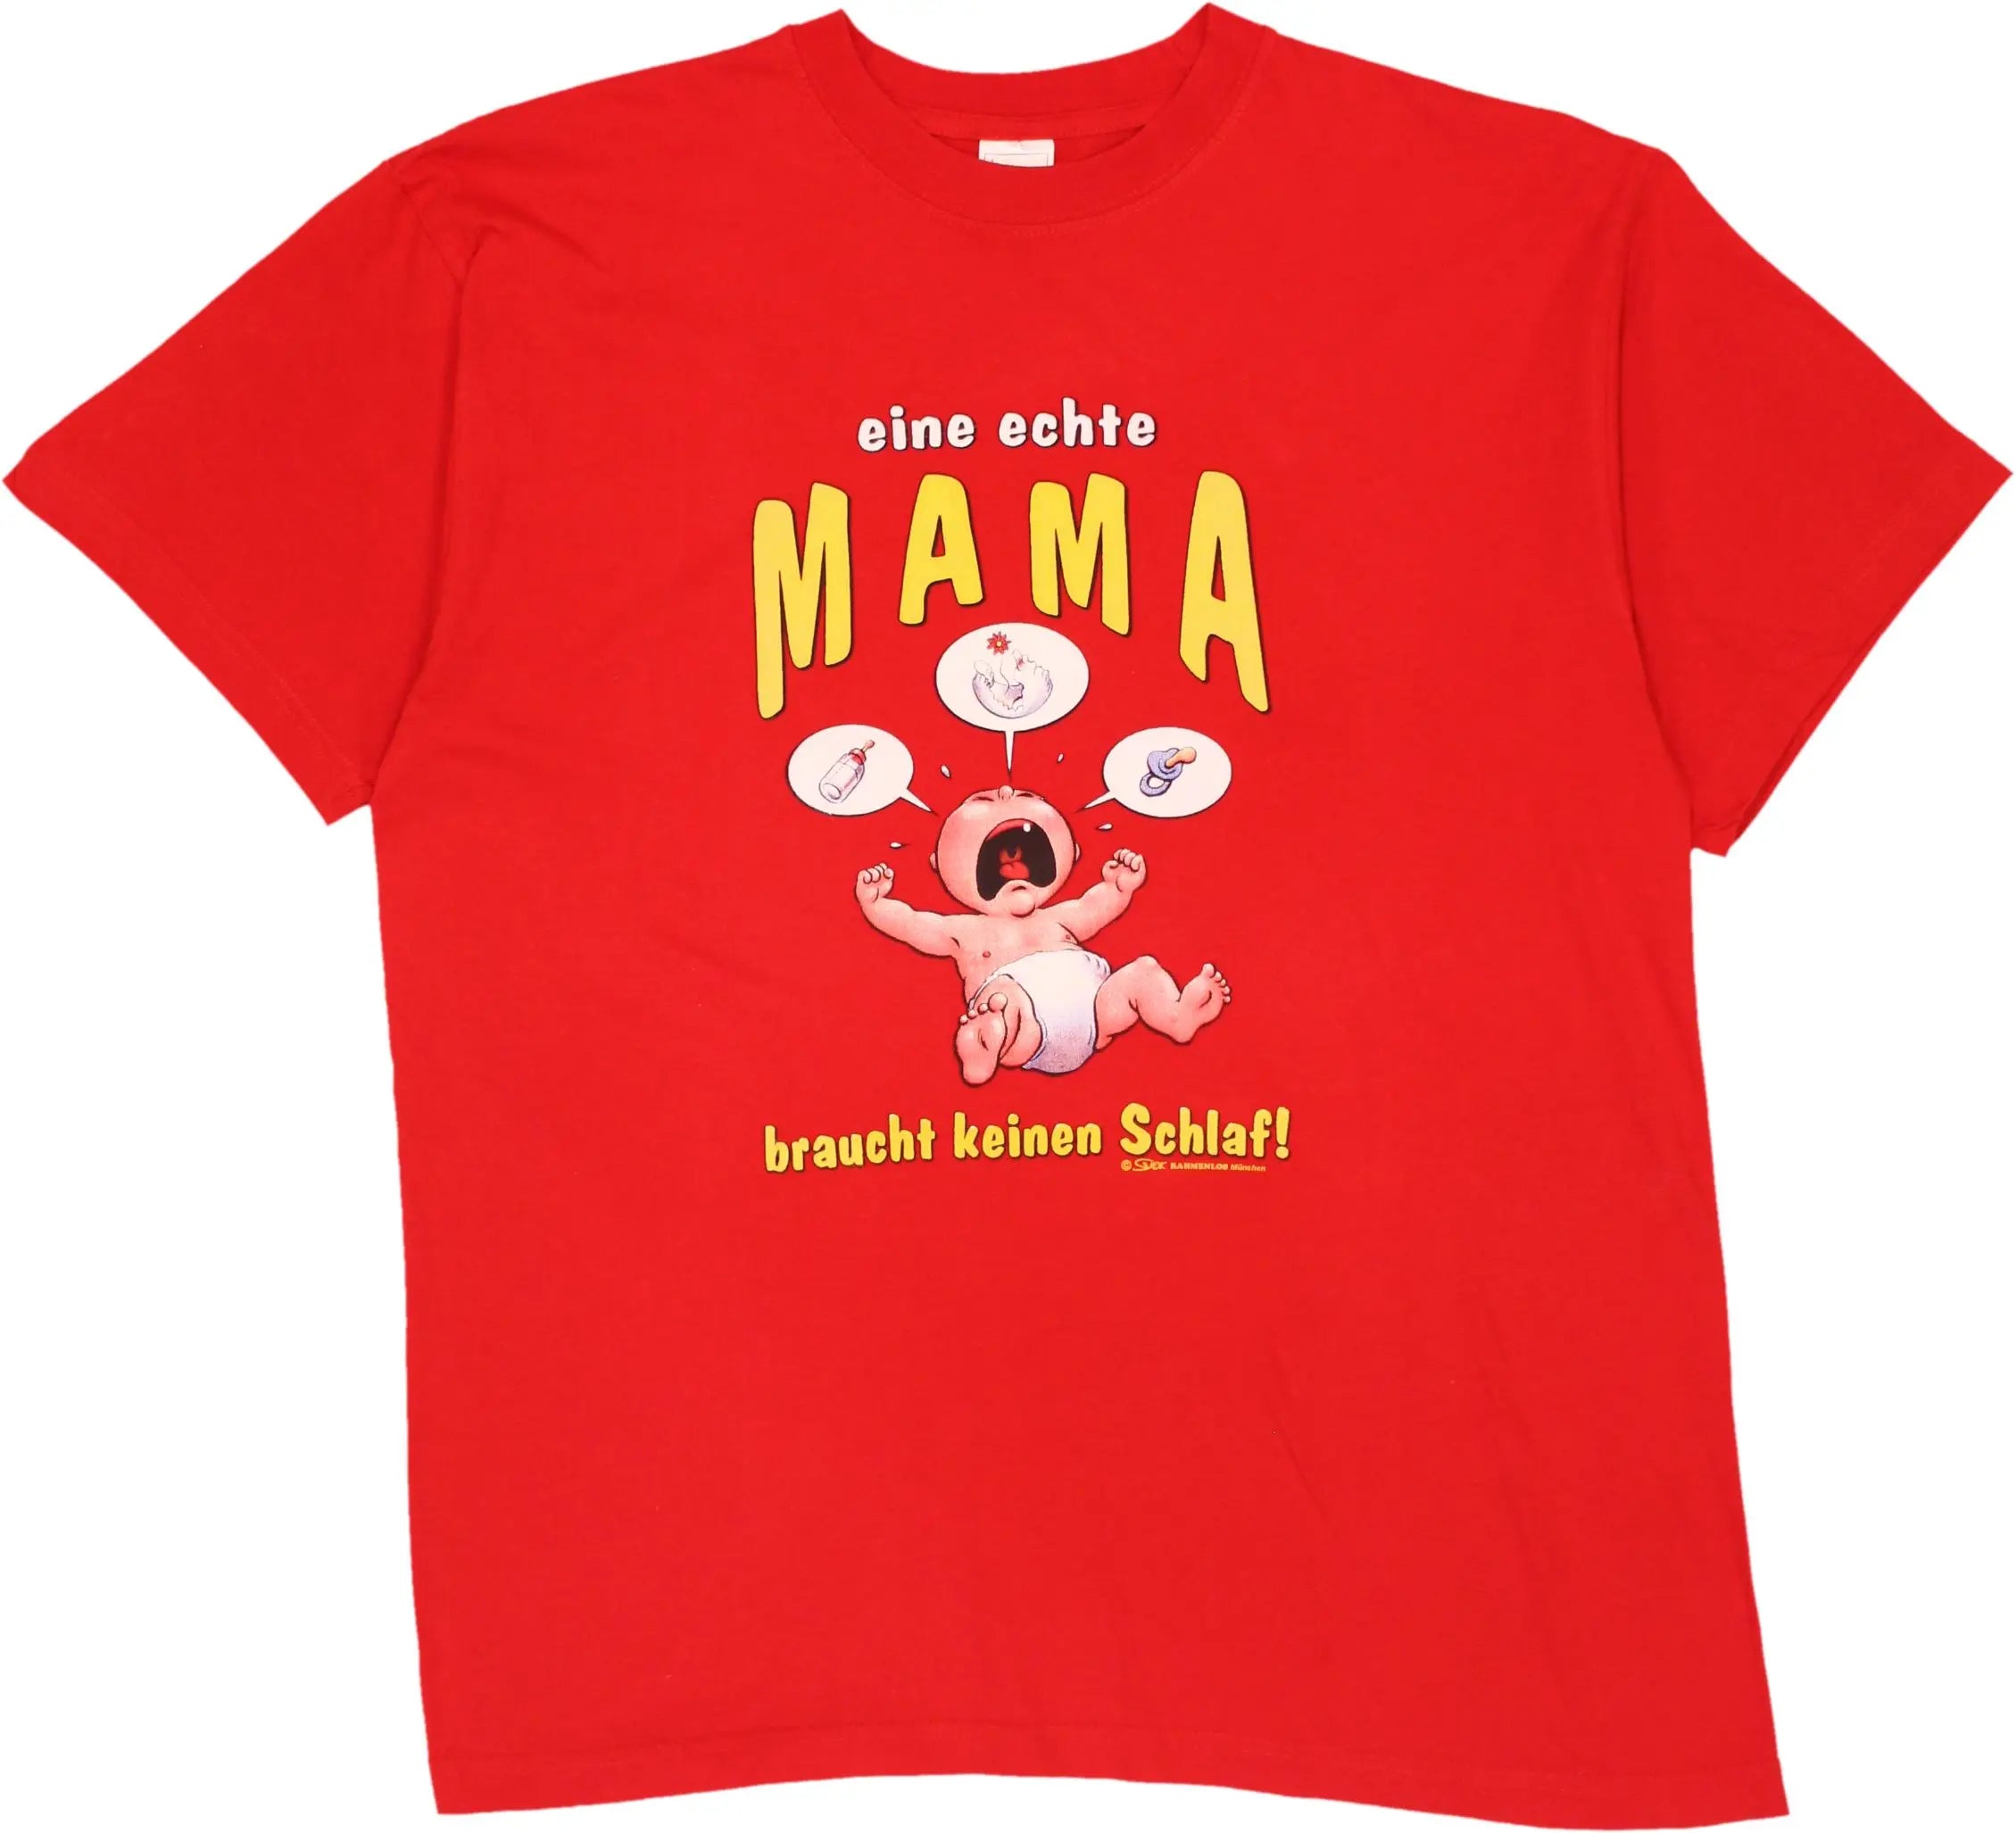 Stedman Classic - Eine Echte Mama Braucht Keinen Schlaf T-shirt- ThriftTale.com - Vintage and second handclothing